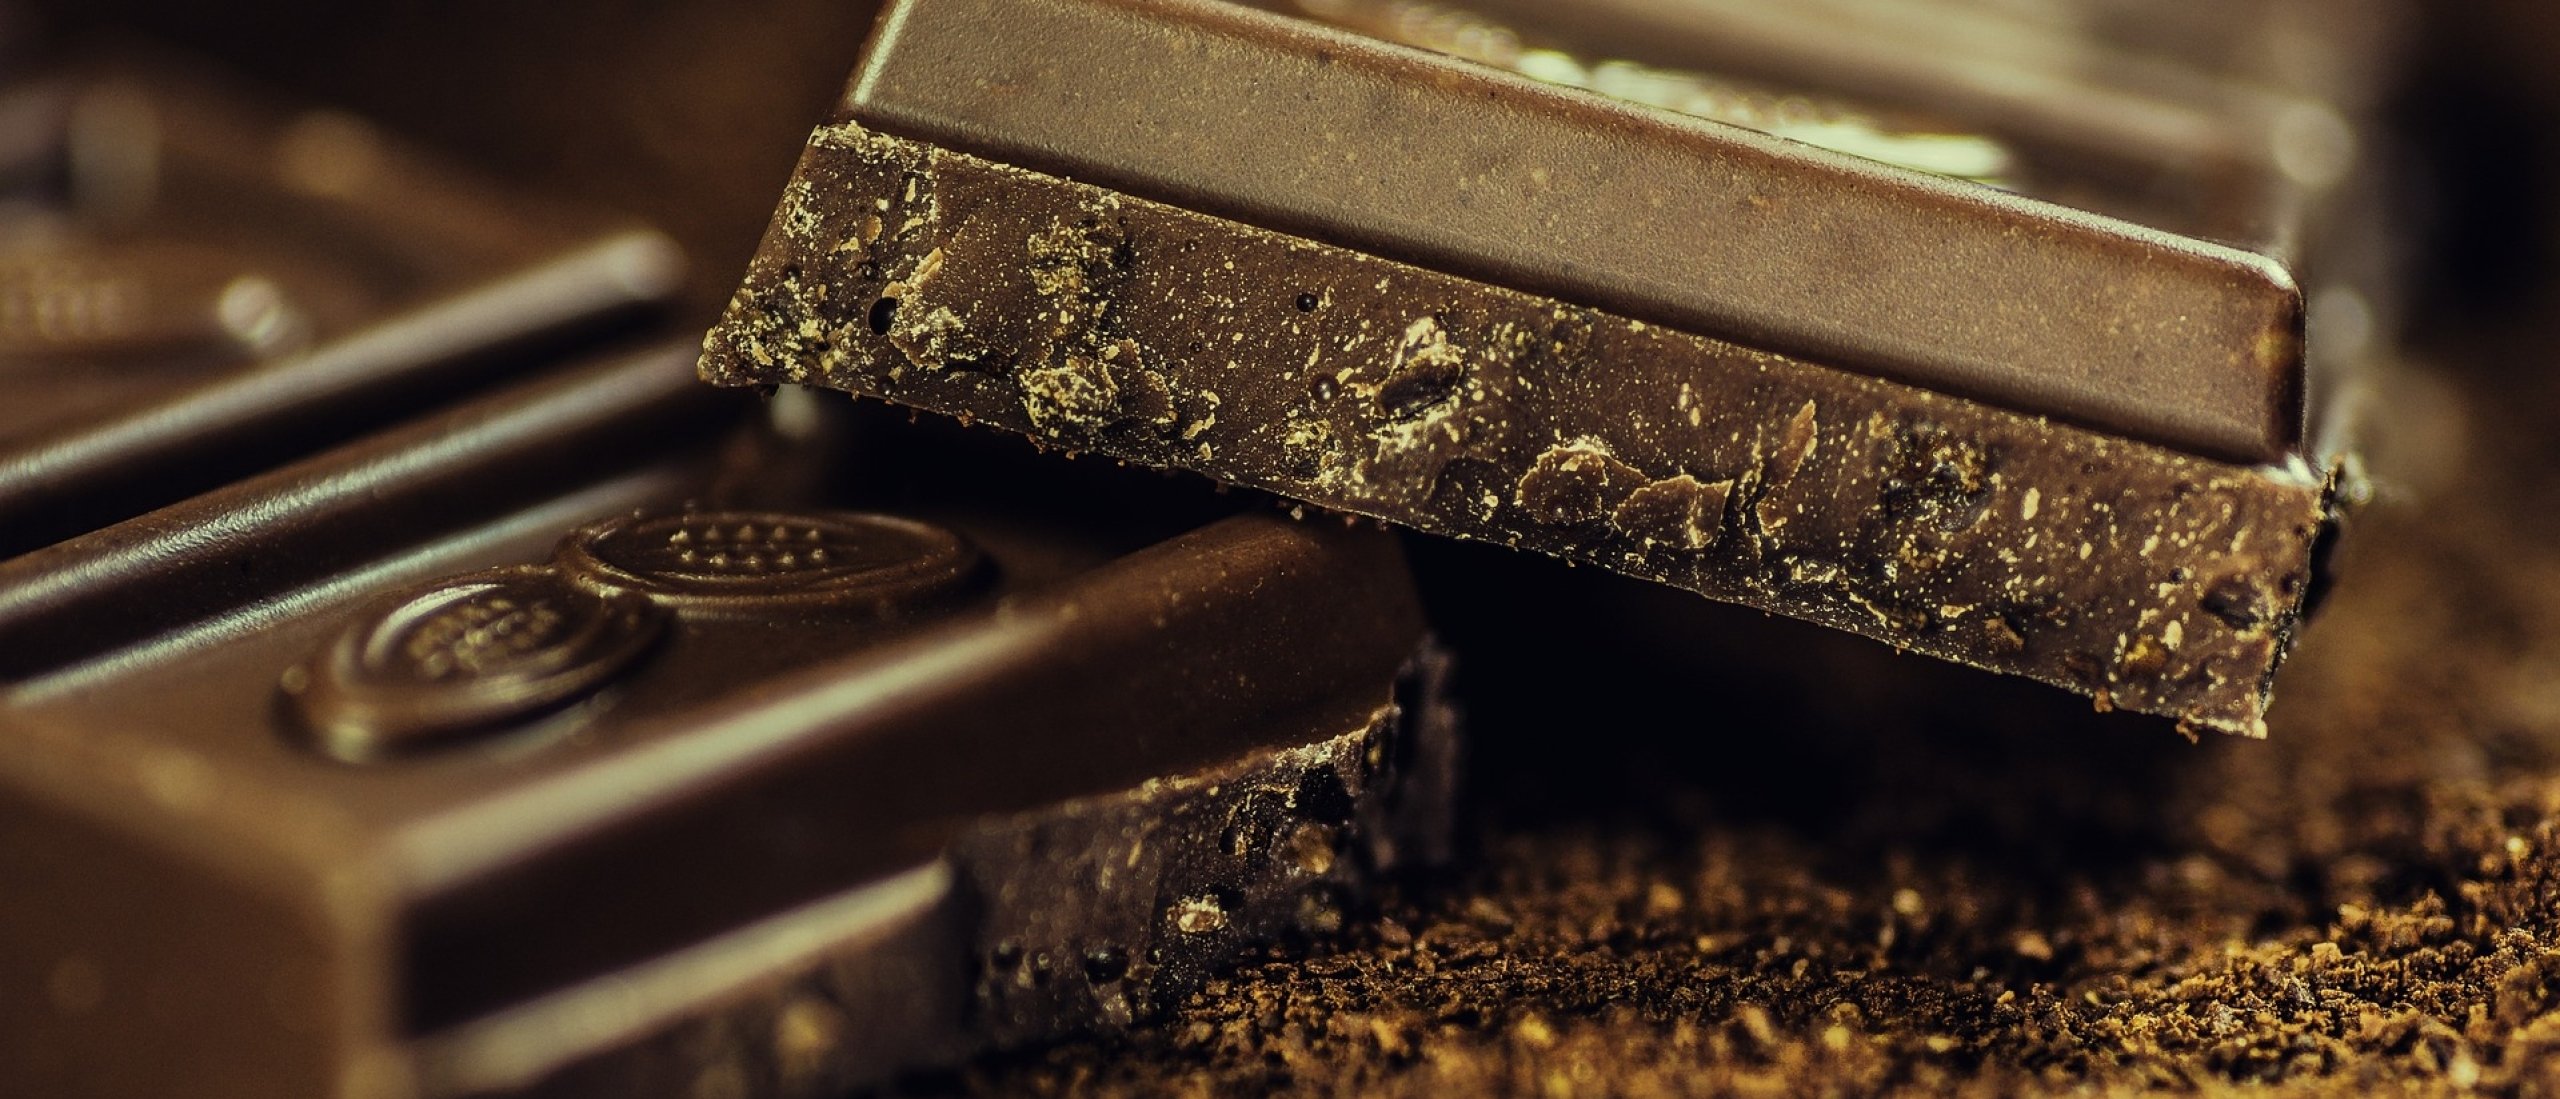 Is chocolade slecht voor je?